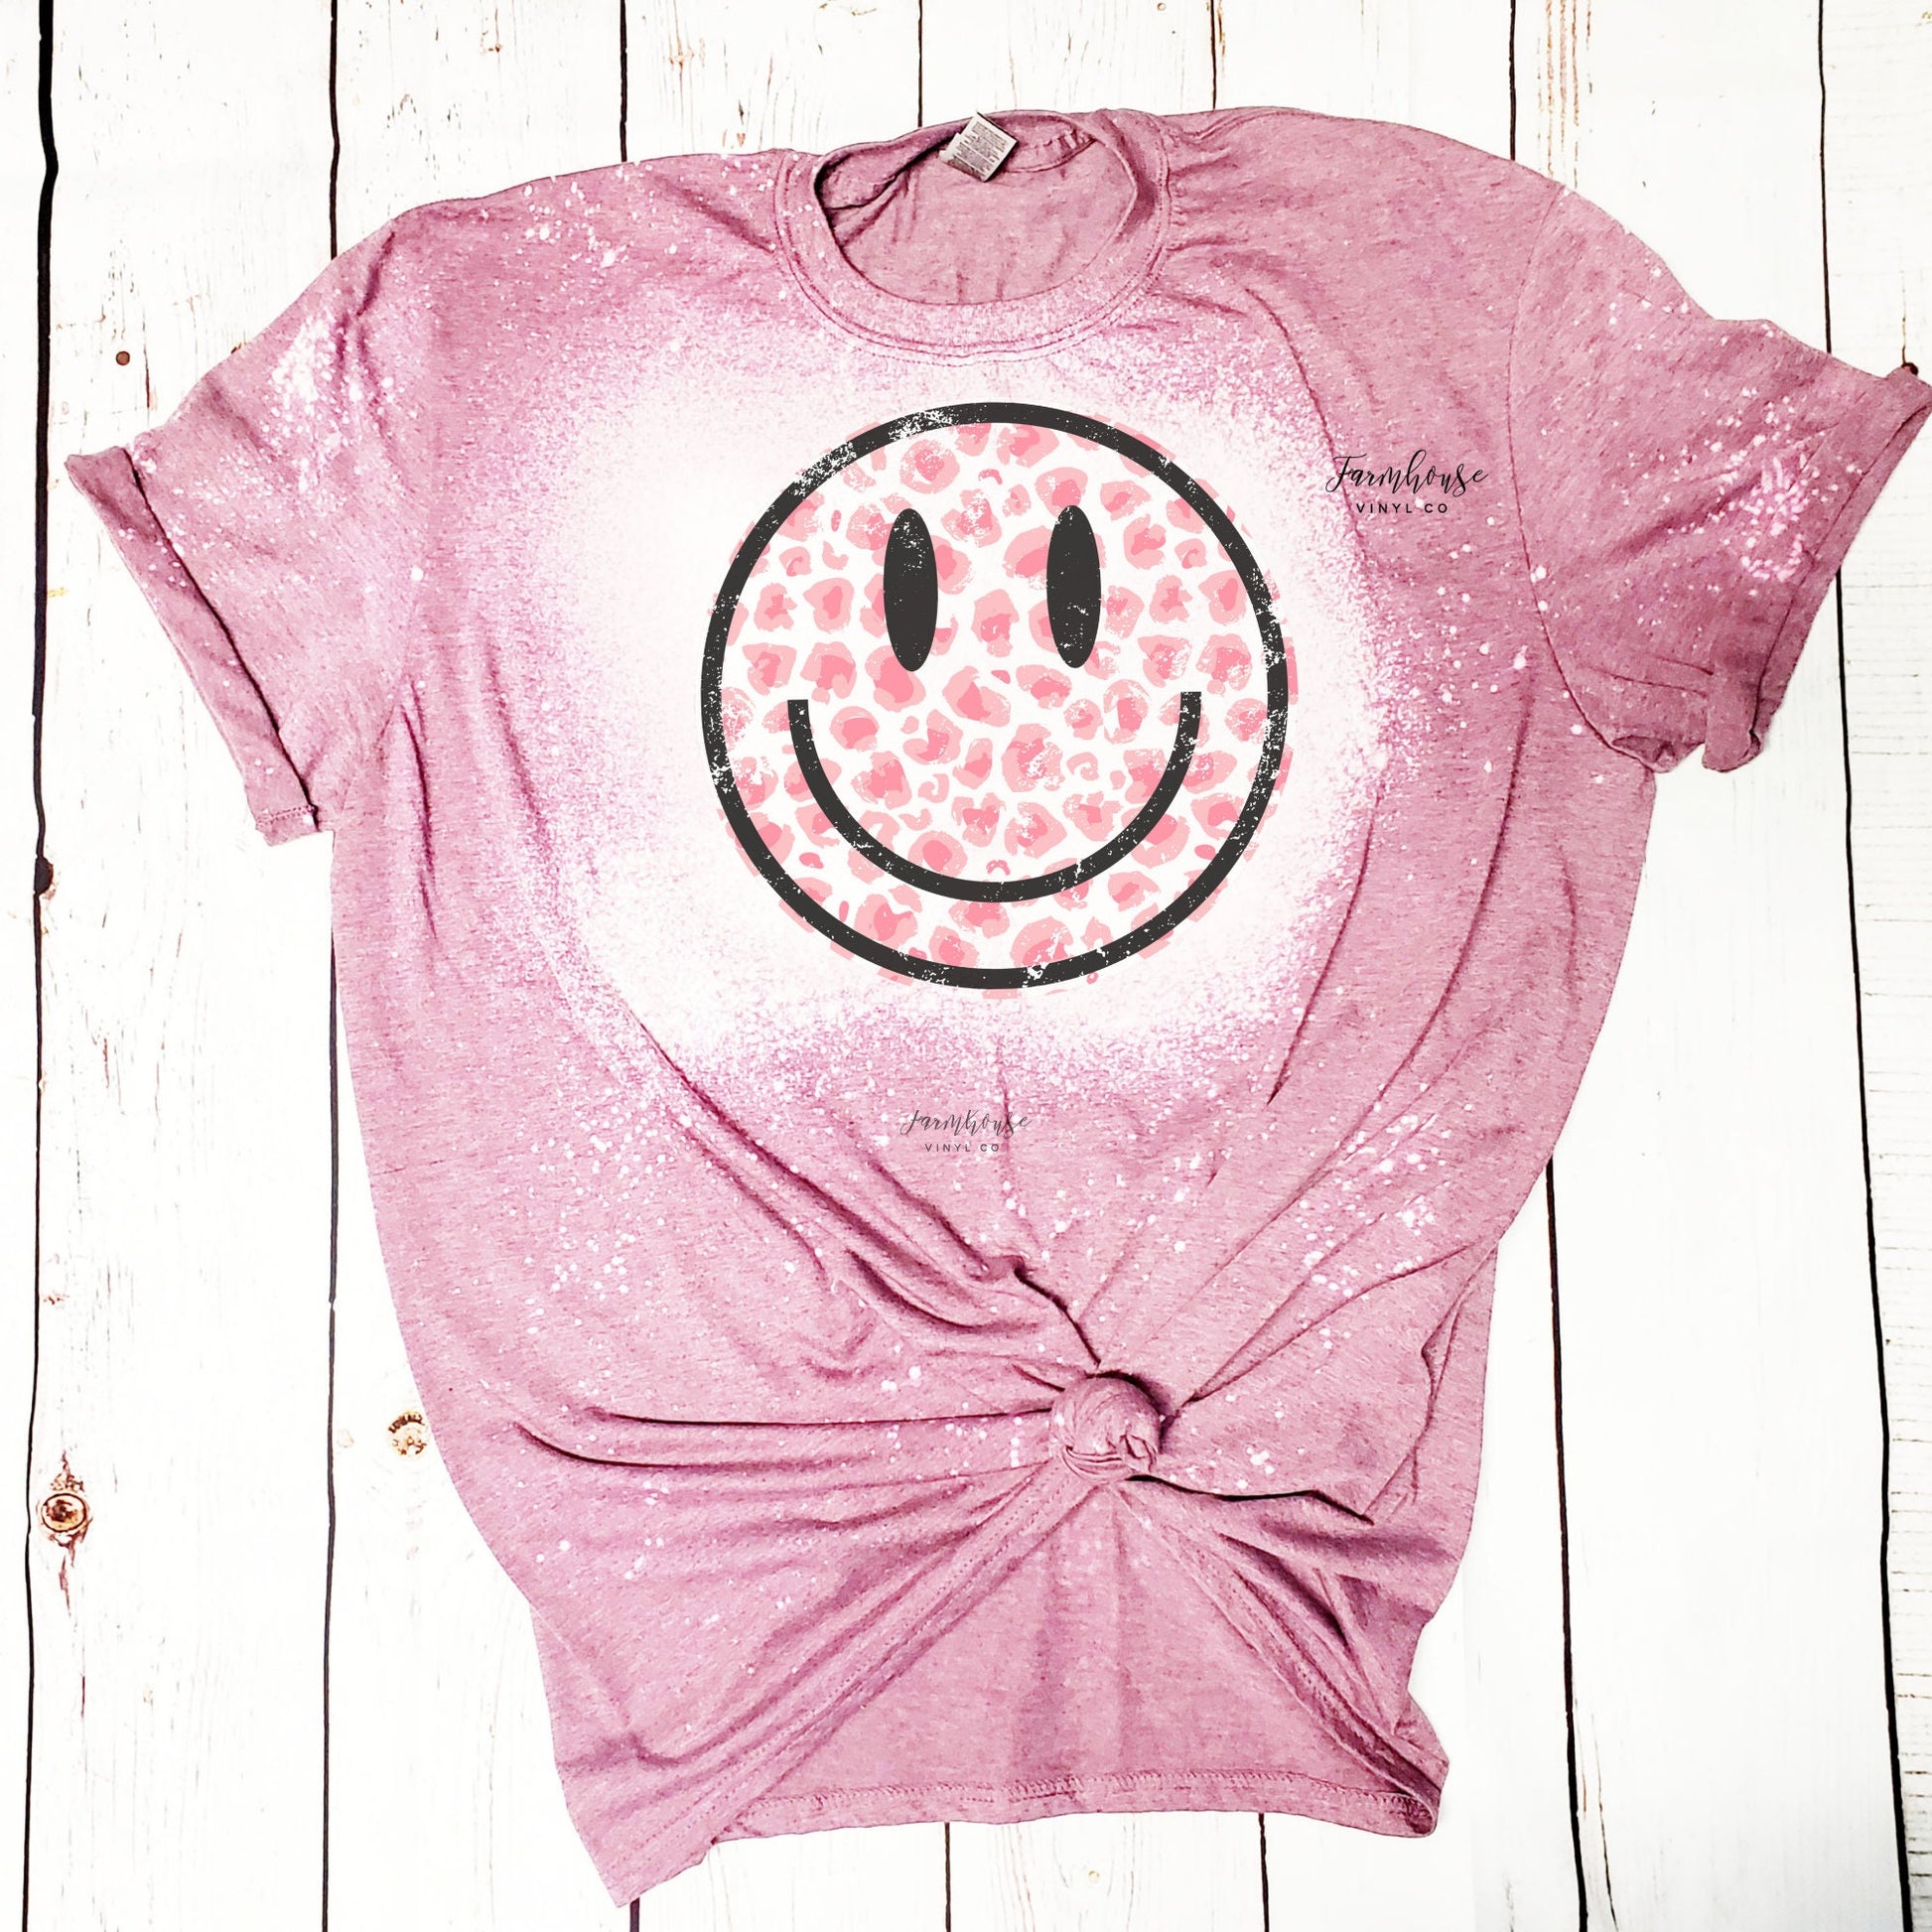 Retro Smiley Face Tee - Farmhouse Vinyl Co